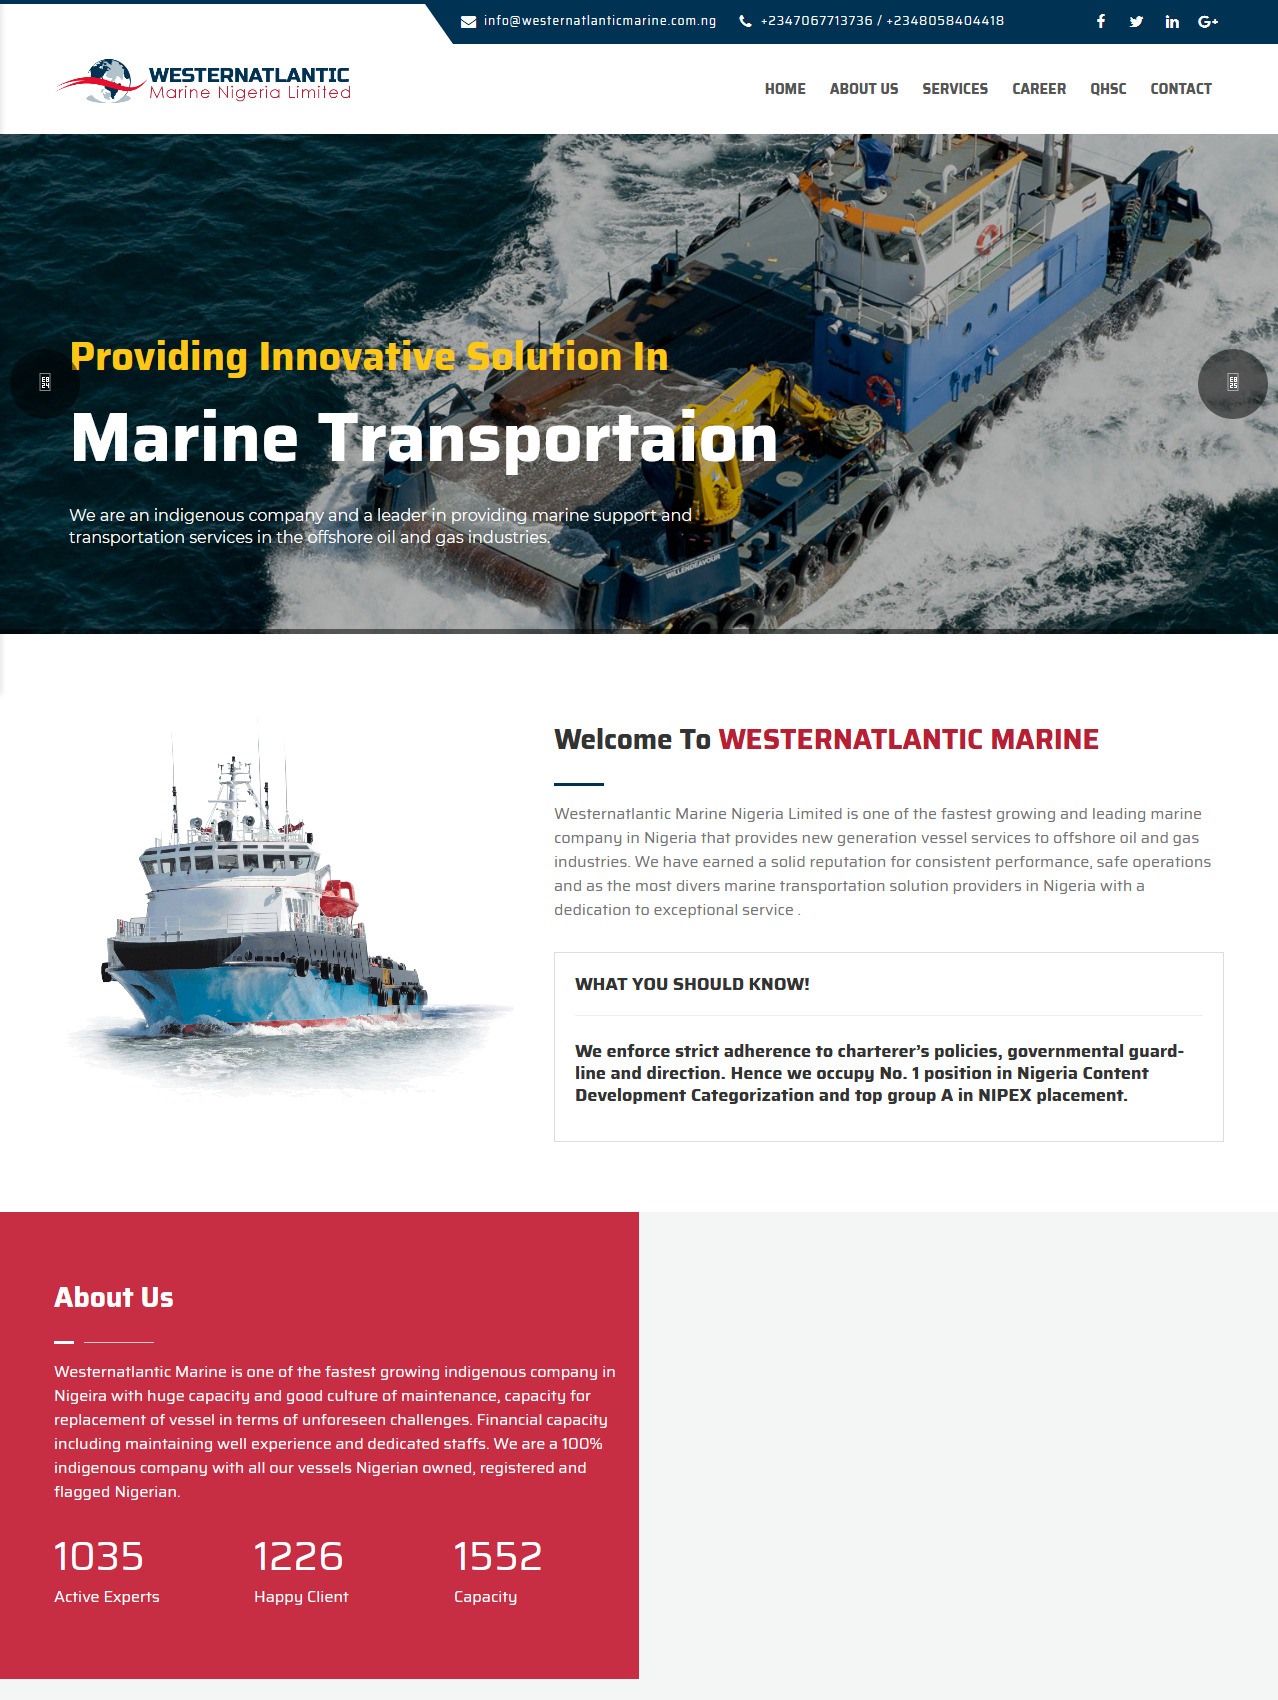 Westernatlantic Marine Nigeria Limited